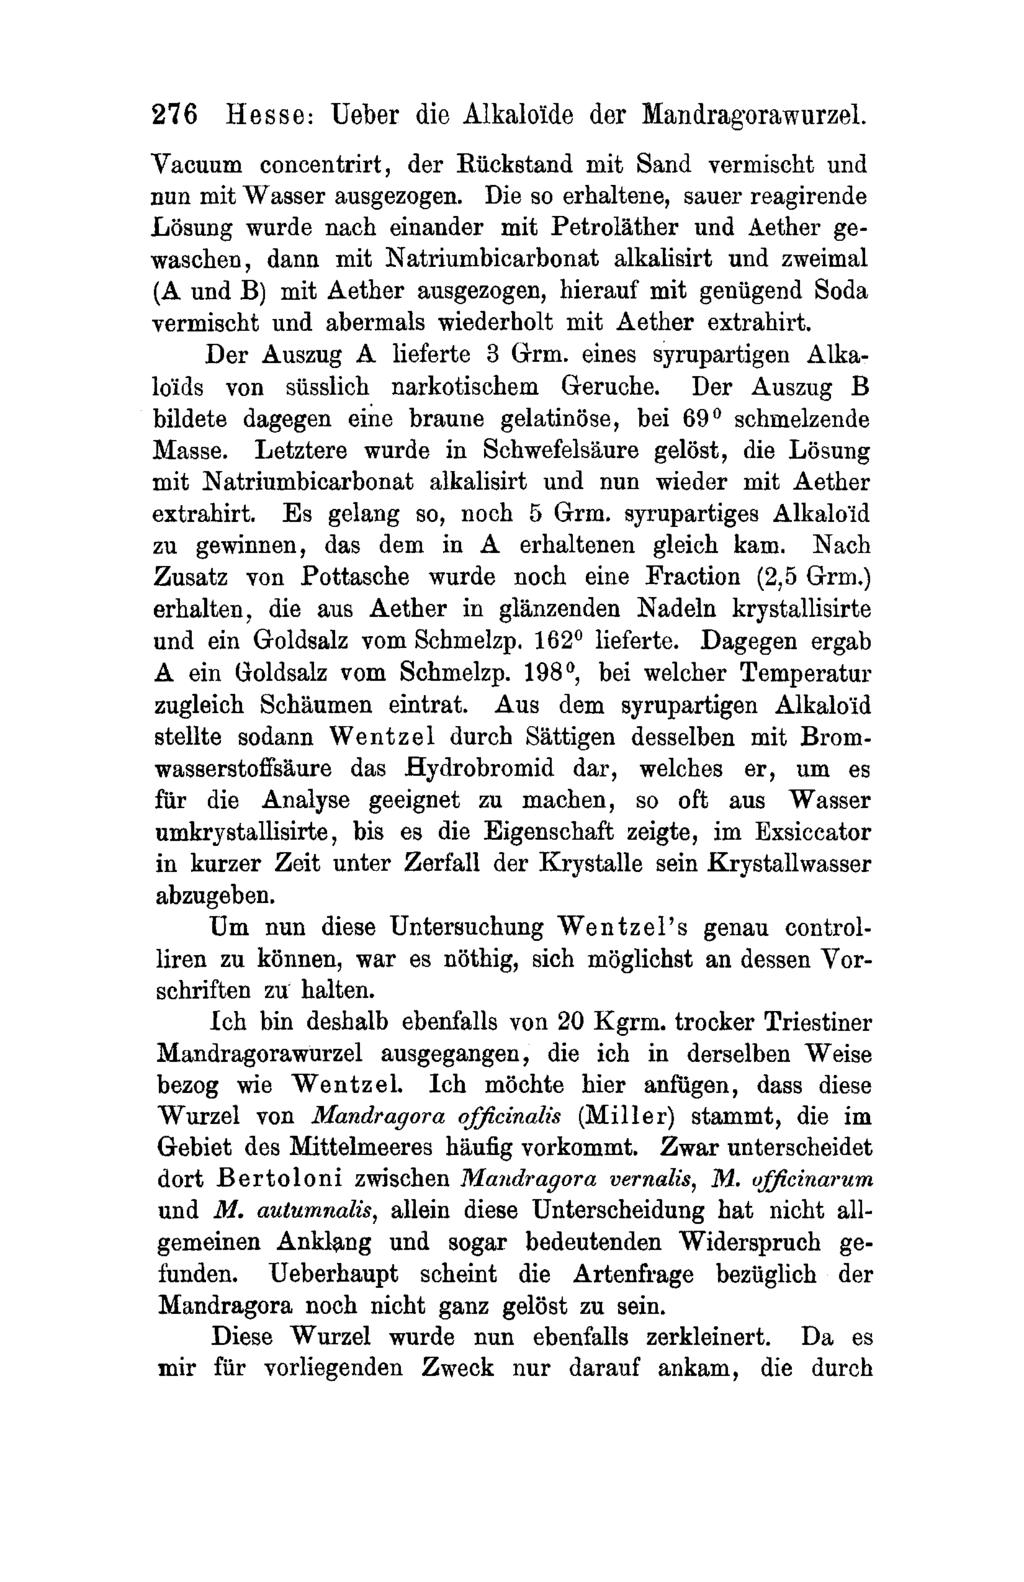 276 Hesse: Ueber die Alkalo'.i.de der Mandrag-orawurzel. Vacuum concentrirt, der Rückstand mit Sand vermischt und nun mit Wasser ausgezogen.